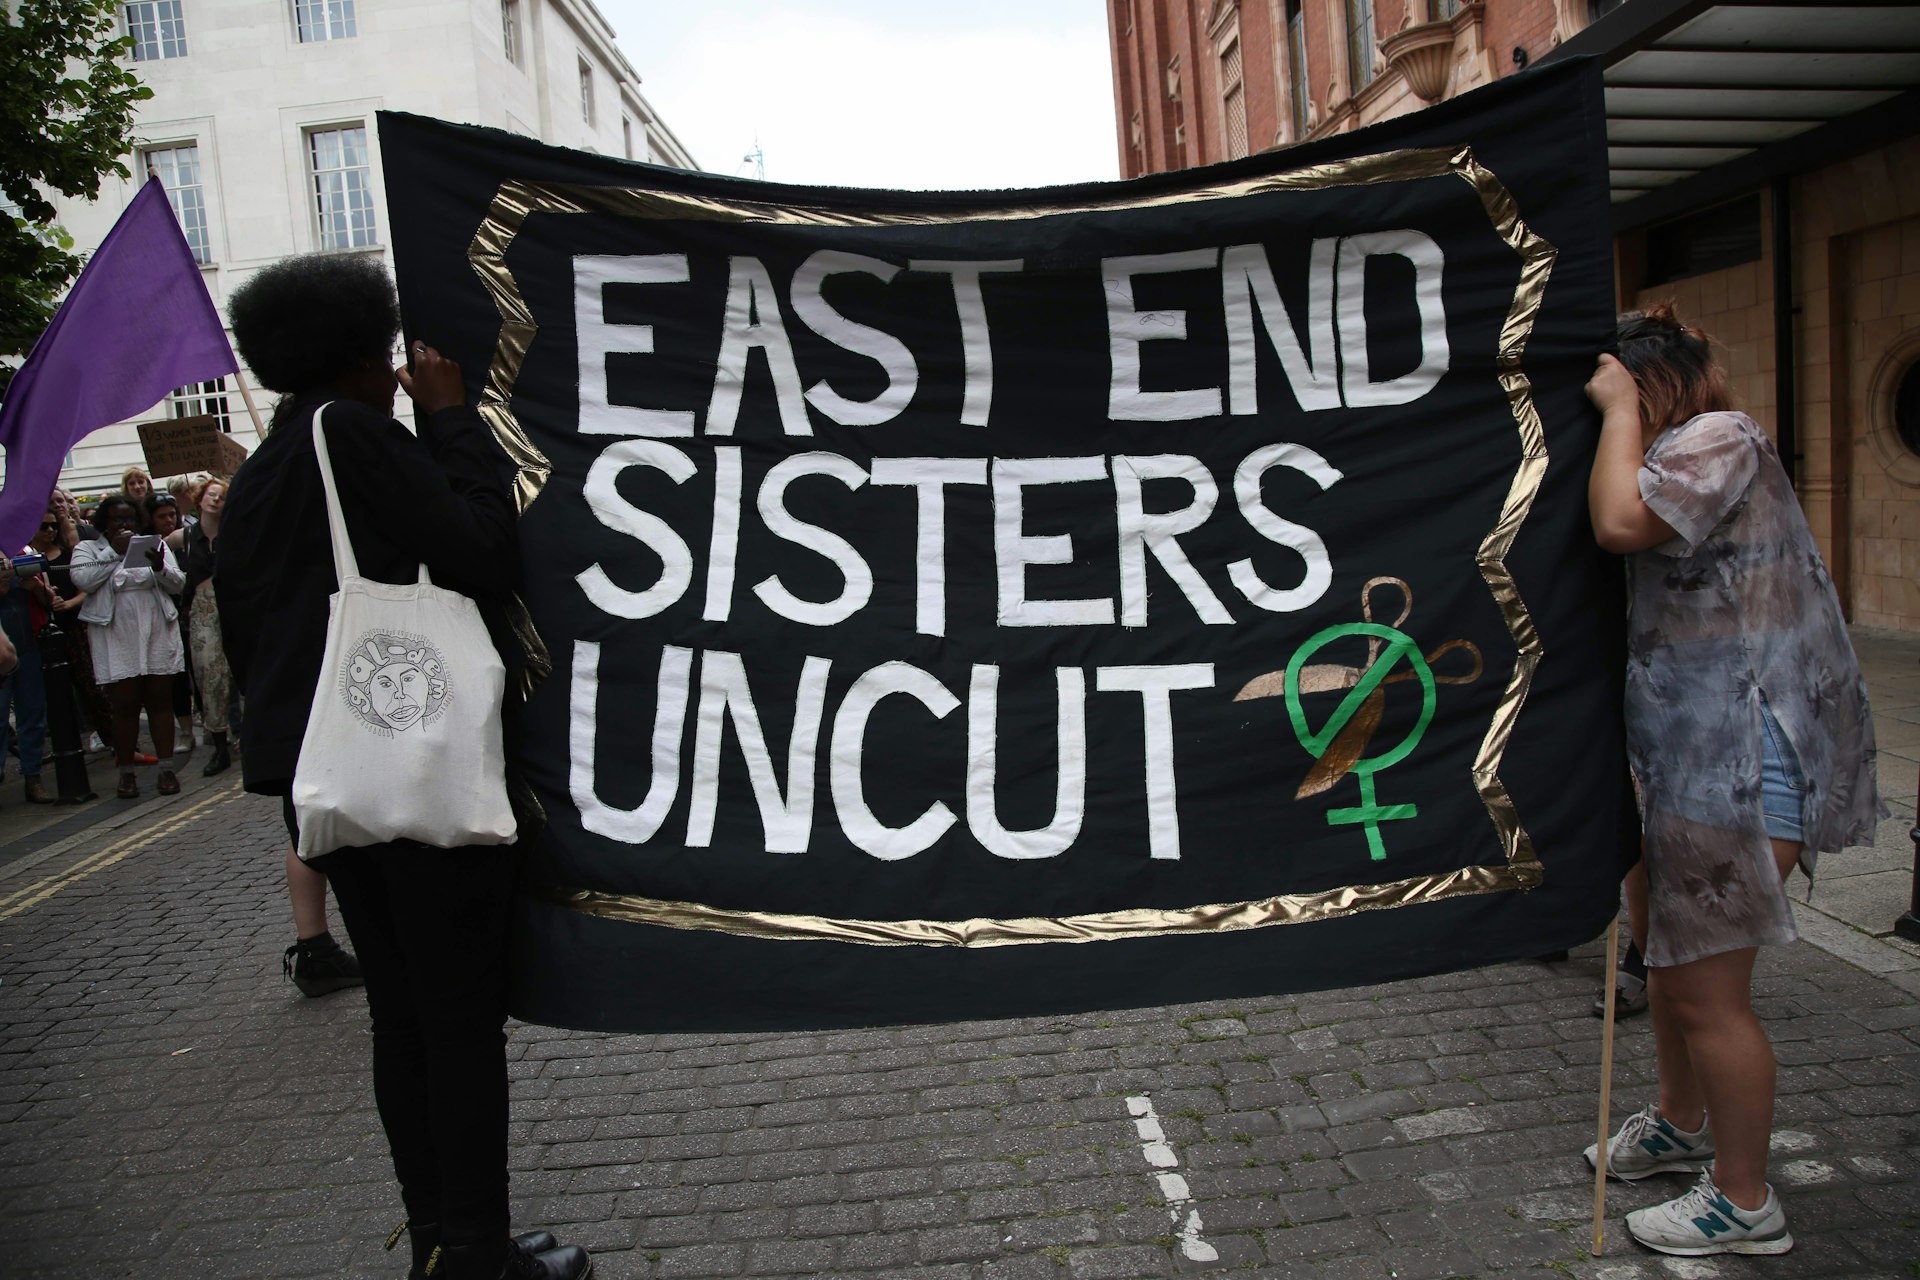 East End sisters uncut